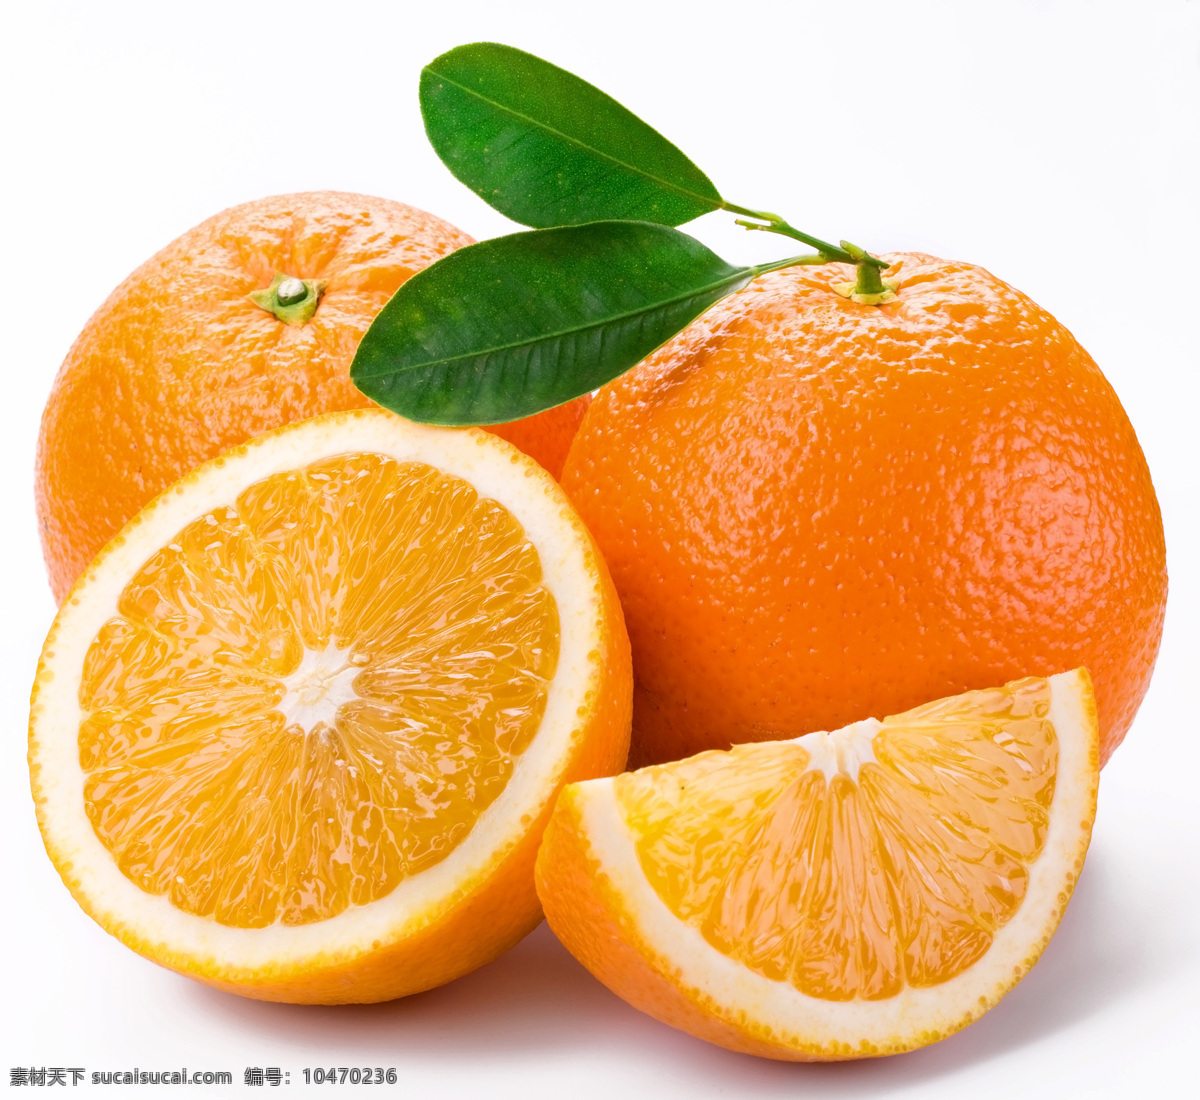 高清橙子 美味橙子 新鲜橙子 橙子新鲜 水果 进口橙子 一堆橙子 橘子 桔子 甜橙 切开的橙子 生物世界